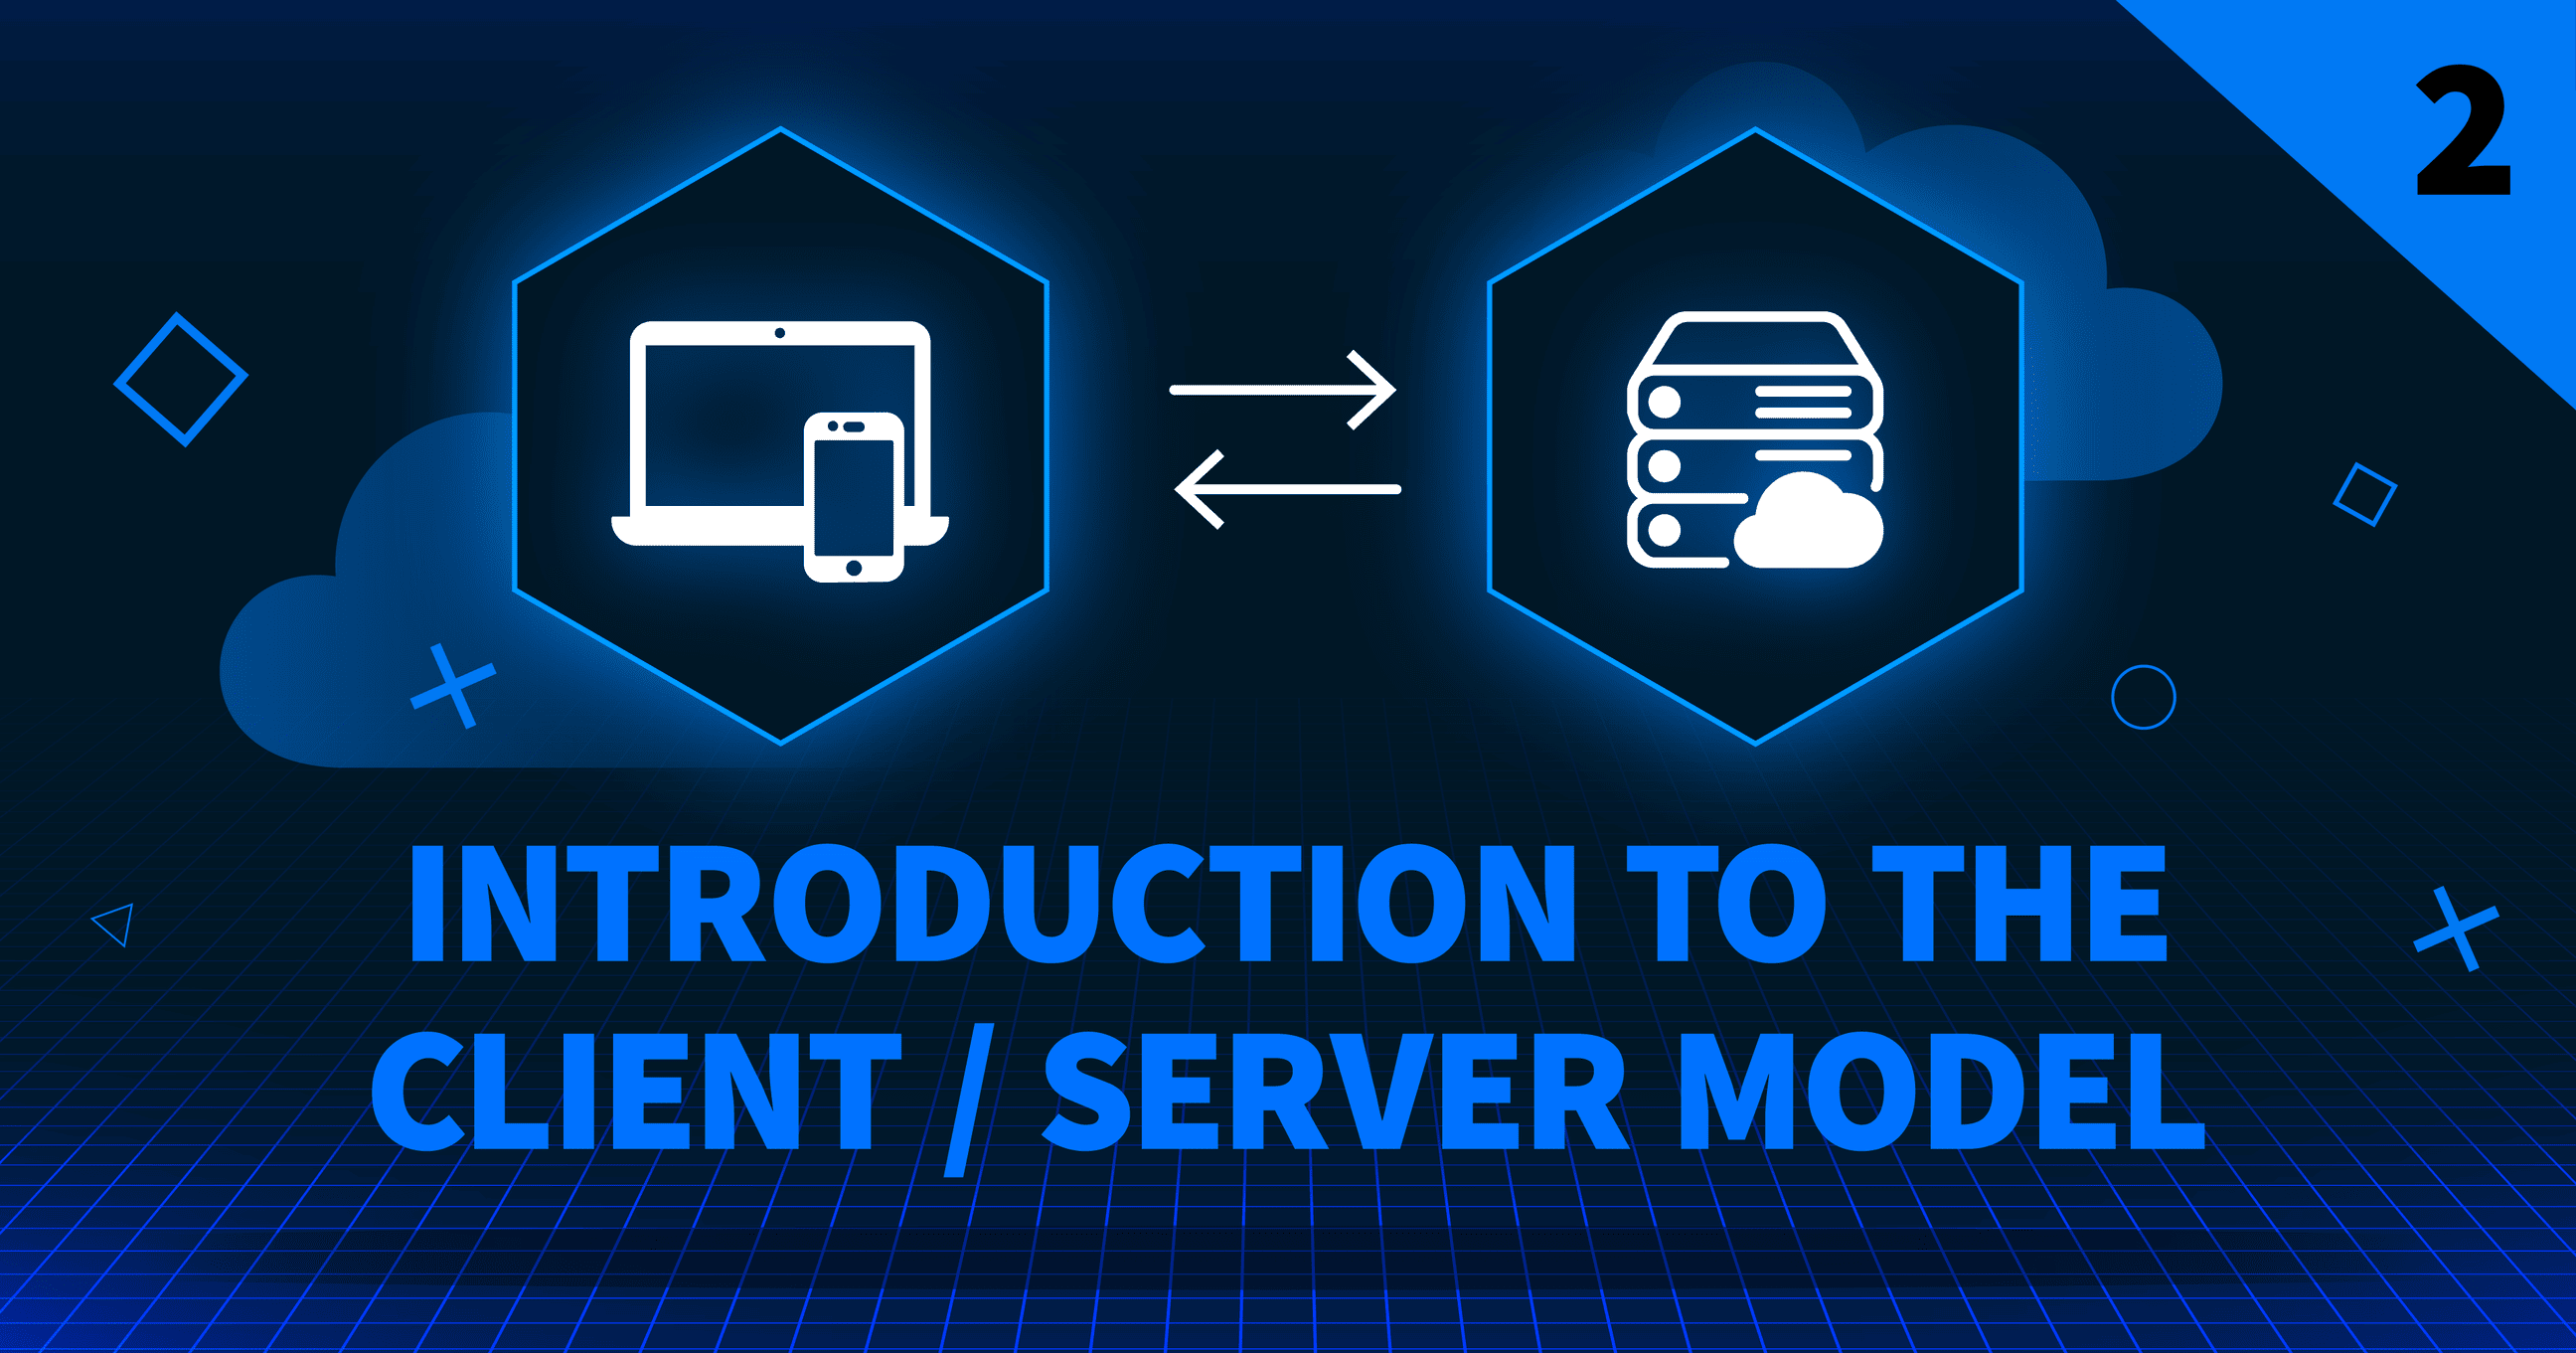 Imagem em miniatura da introdução do modelo cliente/servidor